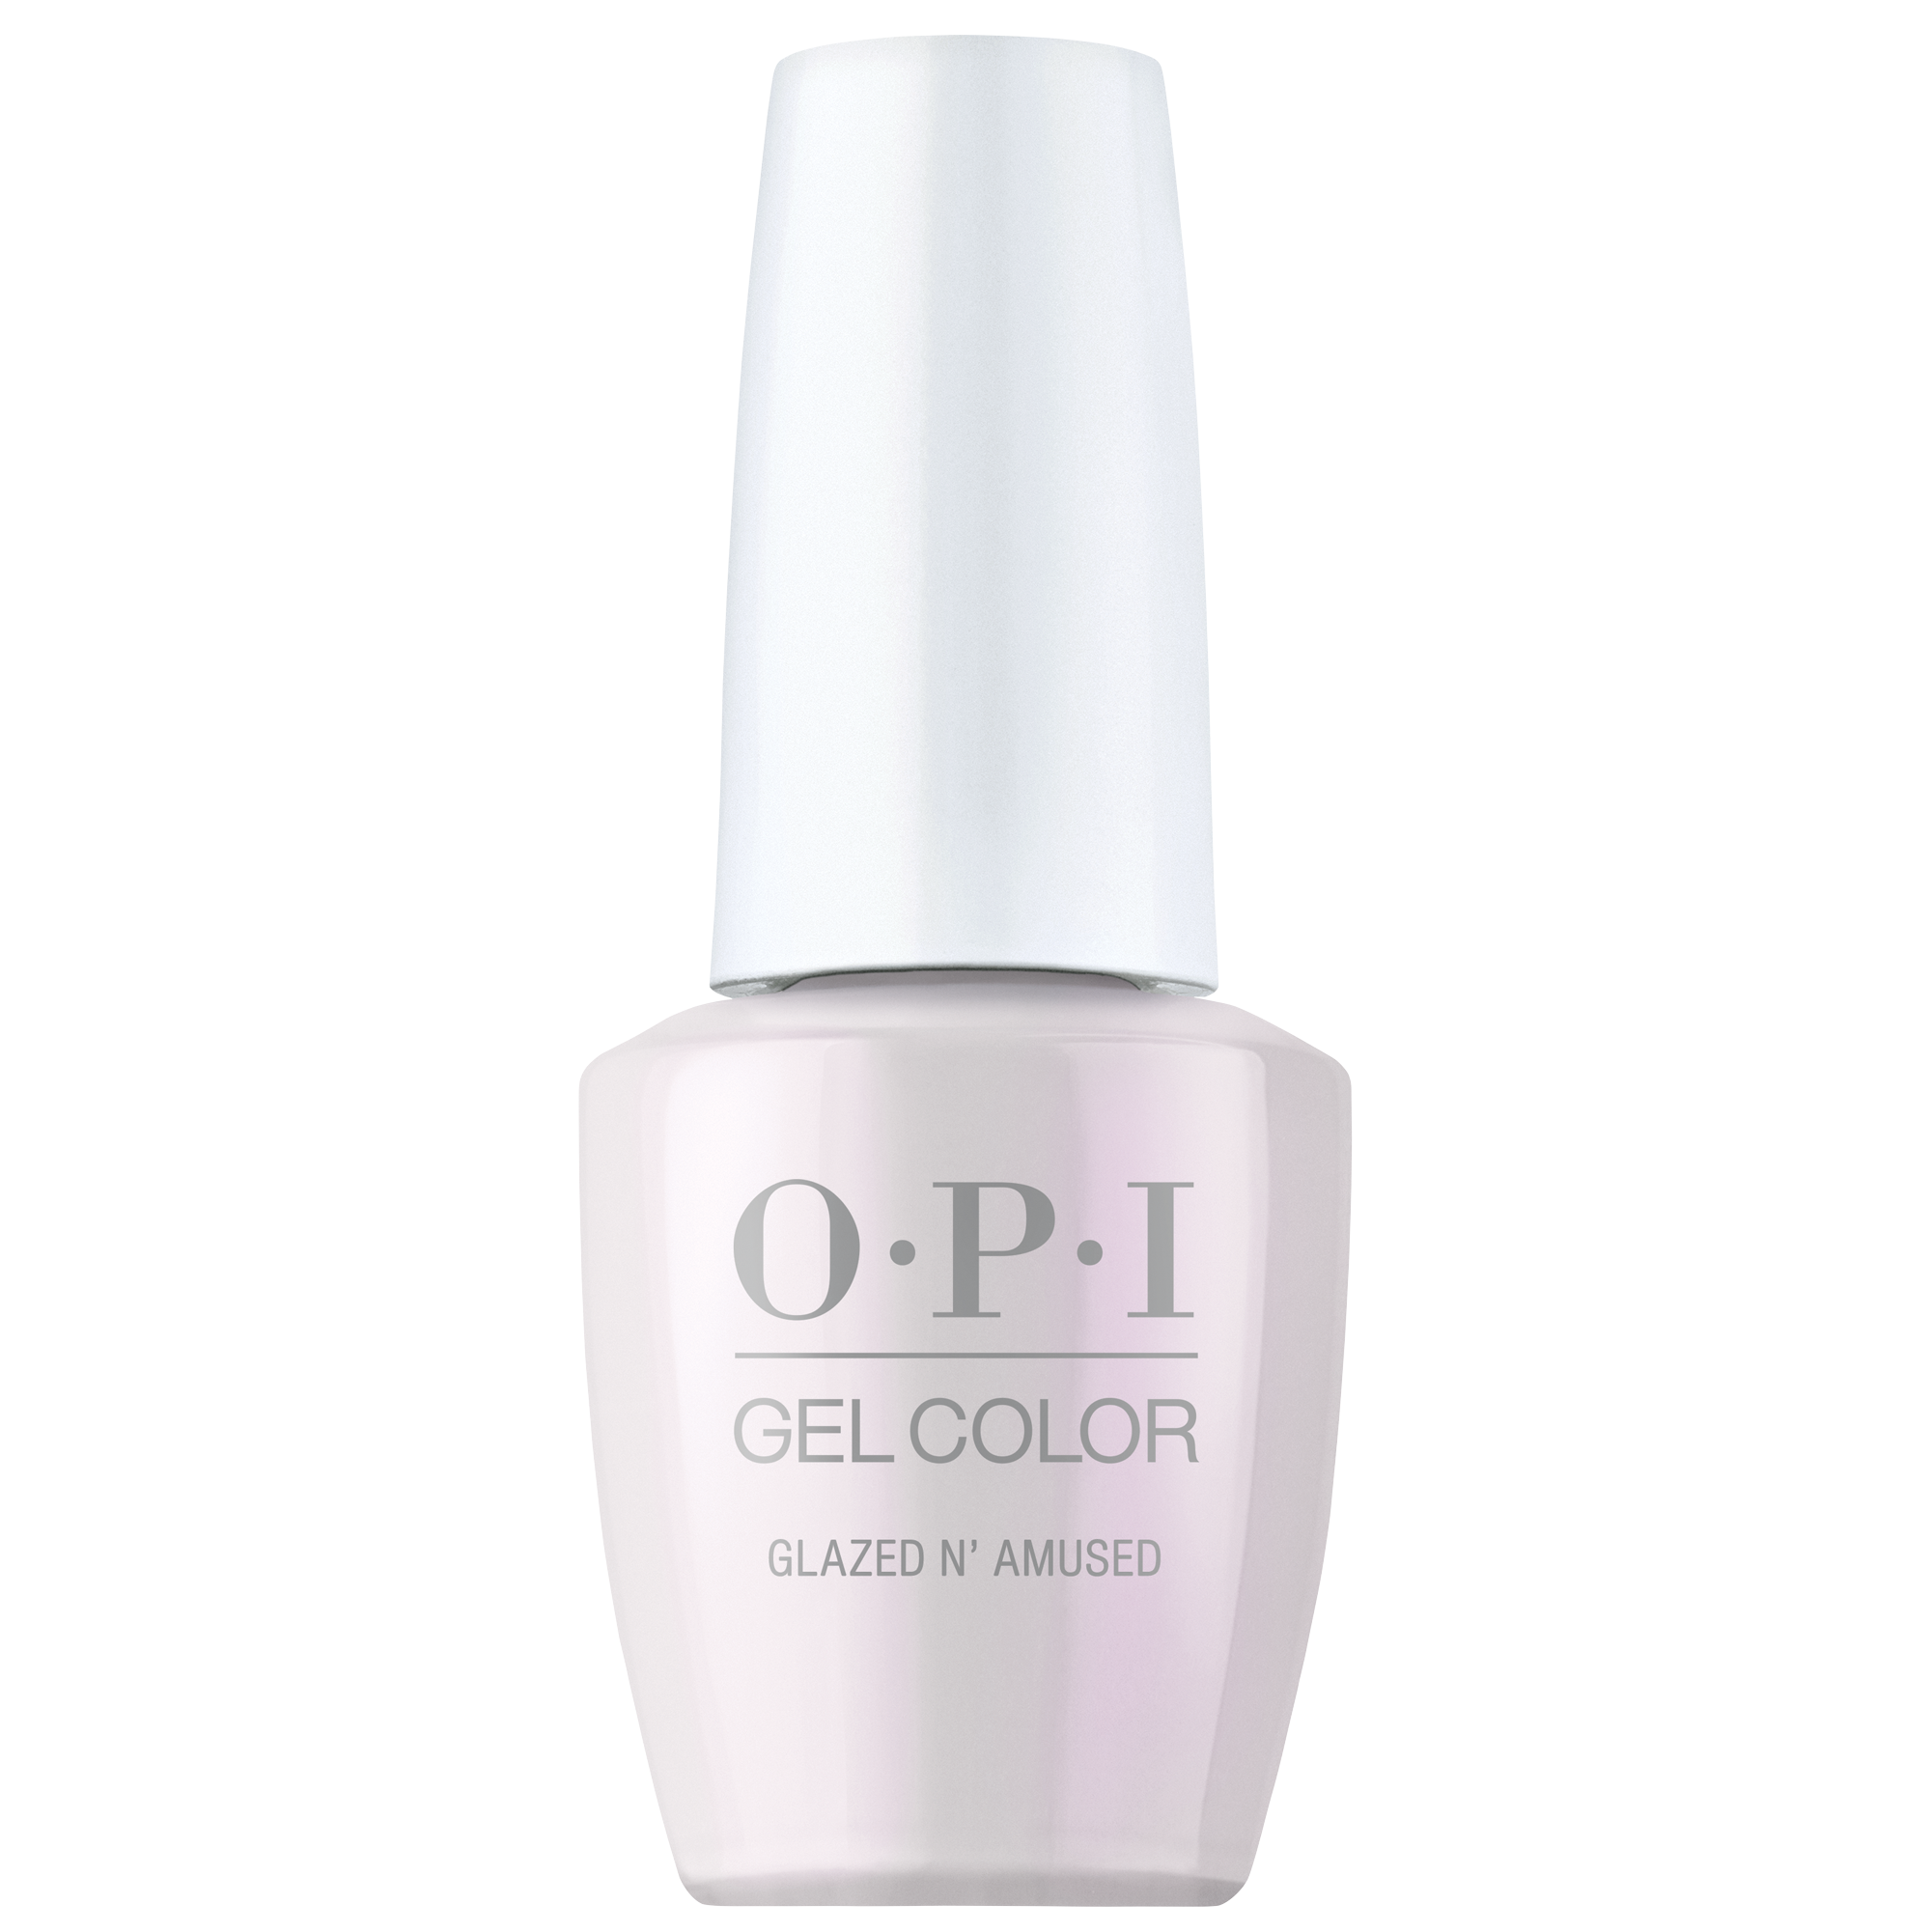 OPI Gel Color 360 - Glazed N' Amused